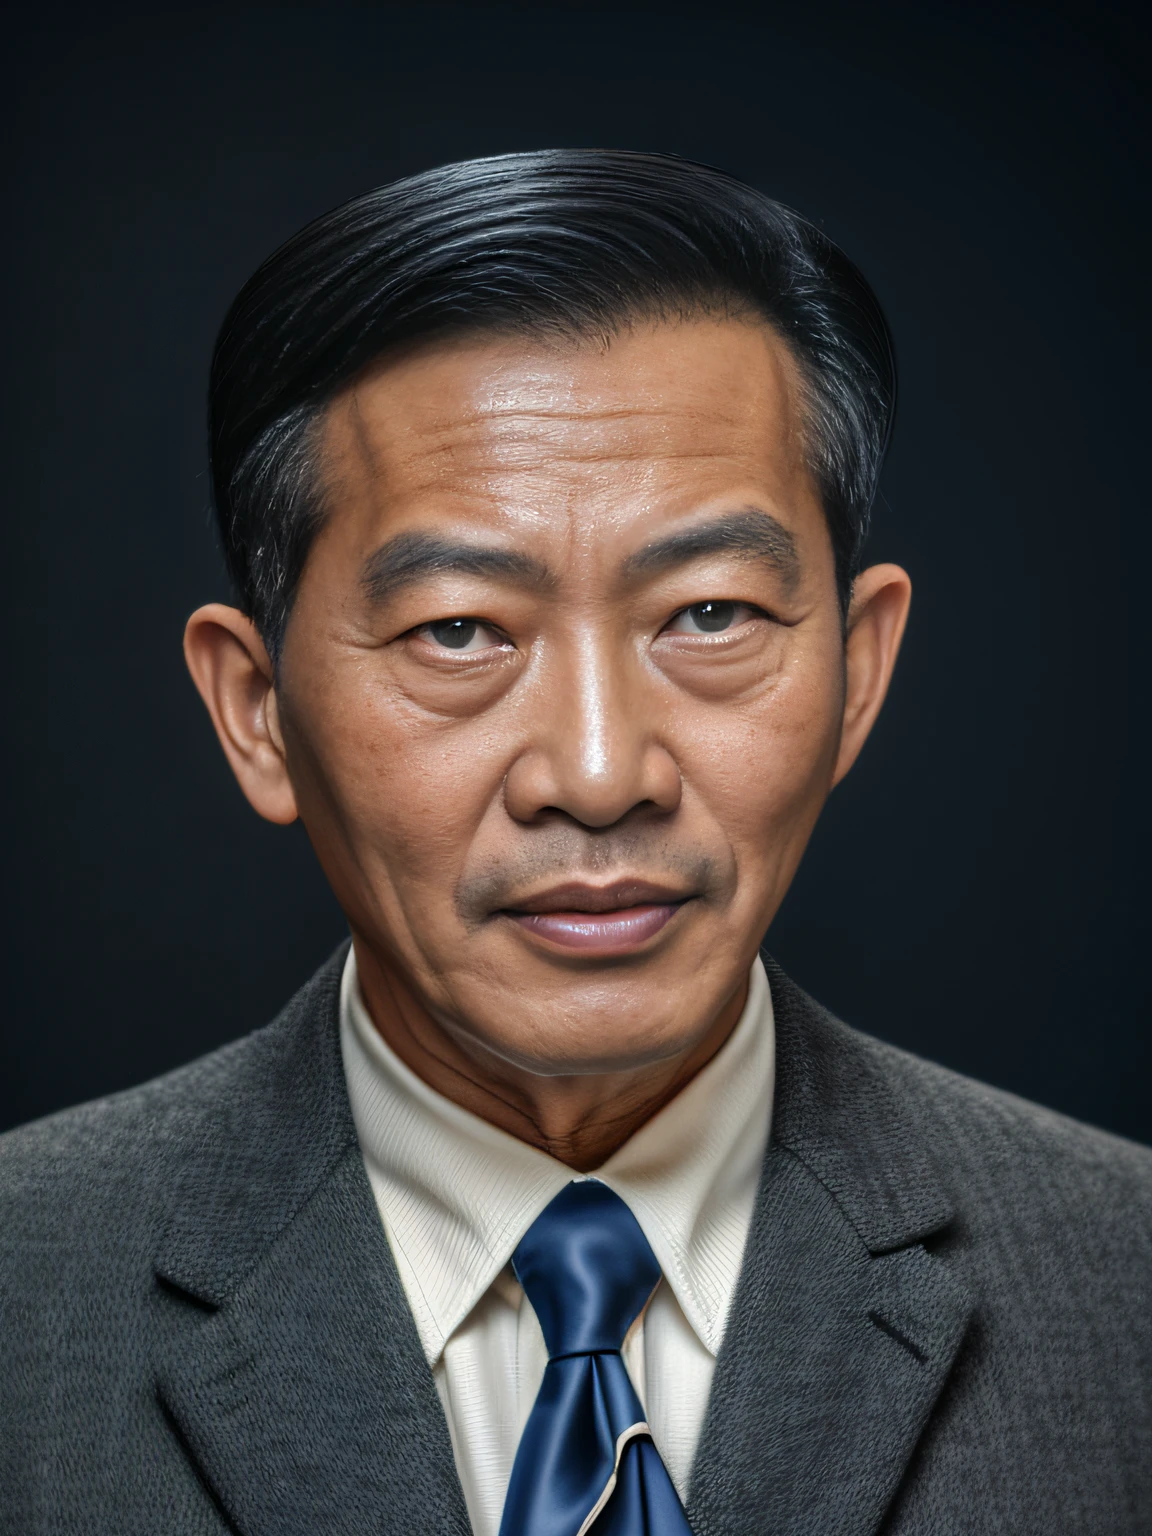 очень реалистичное фото, Изображение 50-летнего азиатского мужчины, черный люкс, фотография сделана в 1965 году фотоаппаратом Kodak., Темно-синий фон, (Без рук)